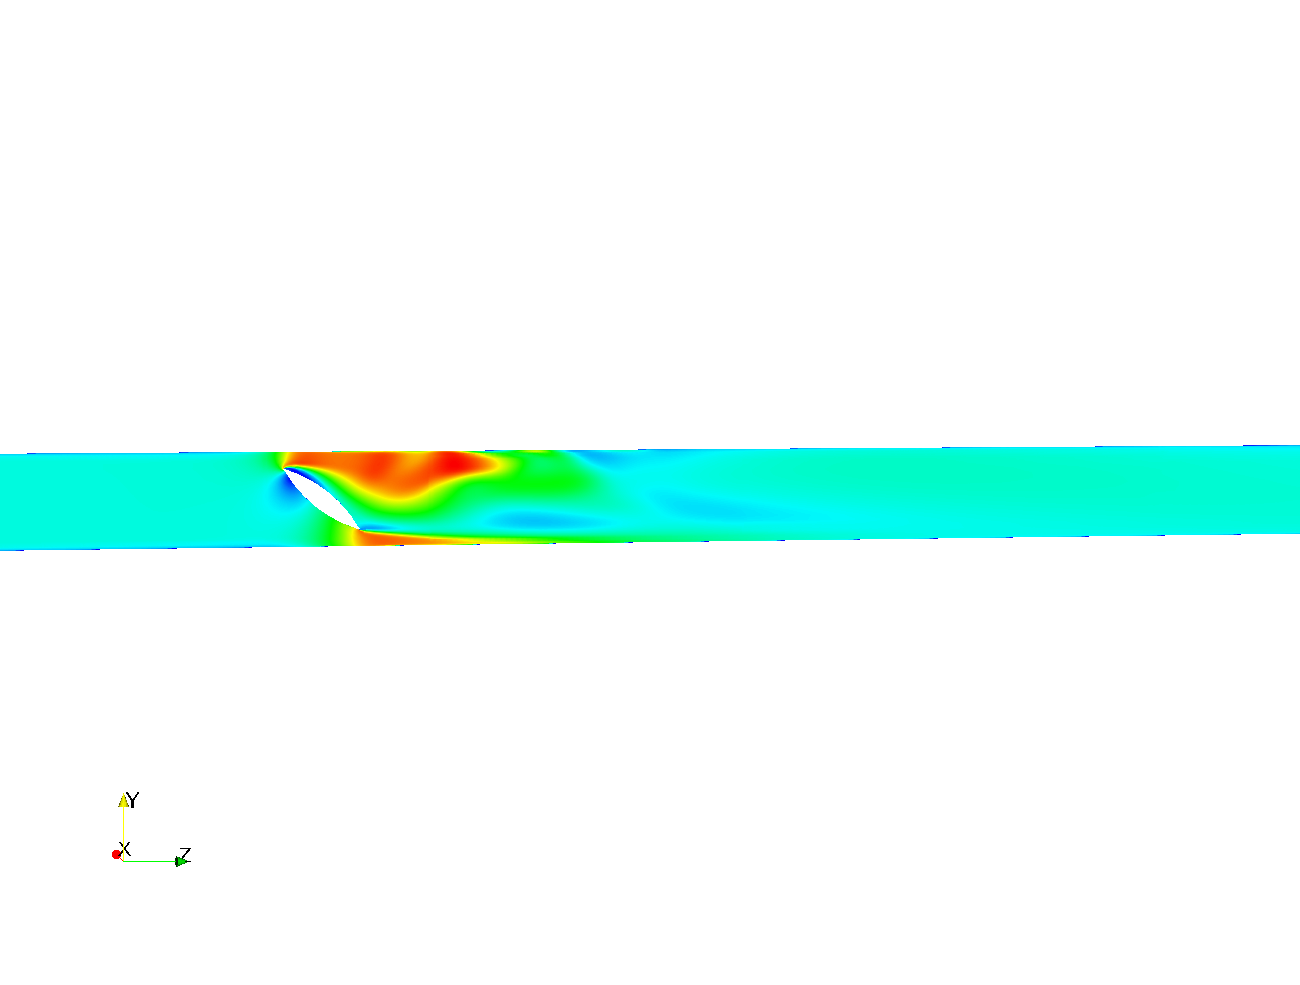 Simulacion CFD valvula Mariposa image